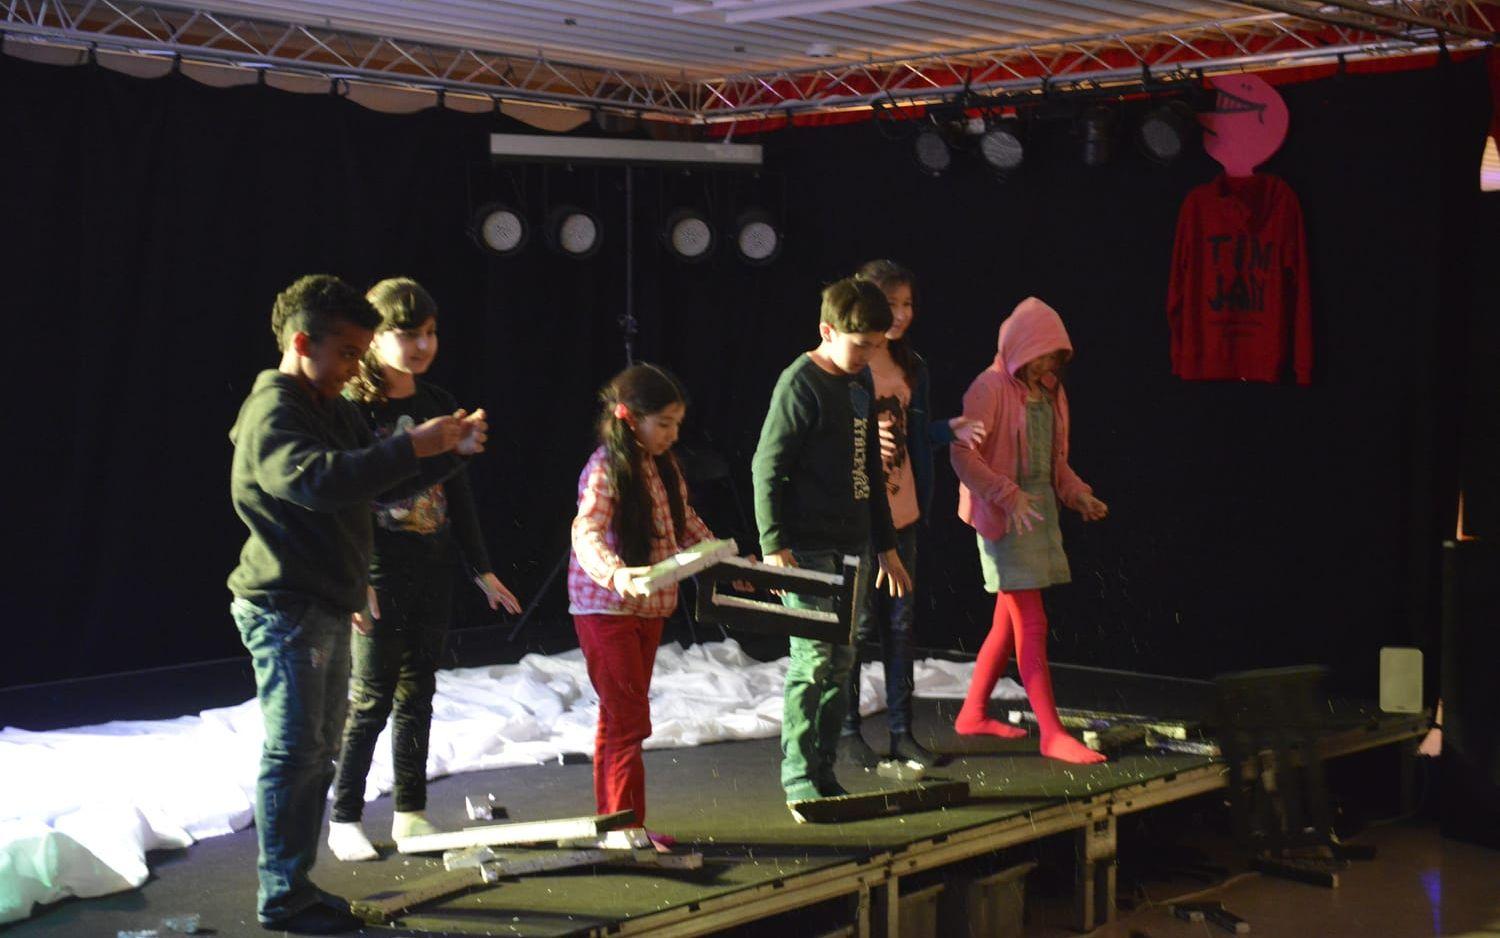 Teaterguppen Knoppen bestående av barn från Restad gård gjorde en pjäs om sina upplevelser som flyktingar. Bilder: Daniel Gustafsson